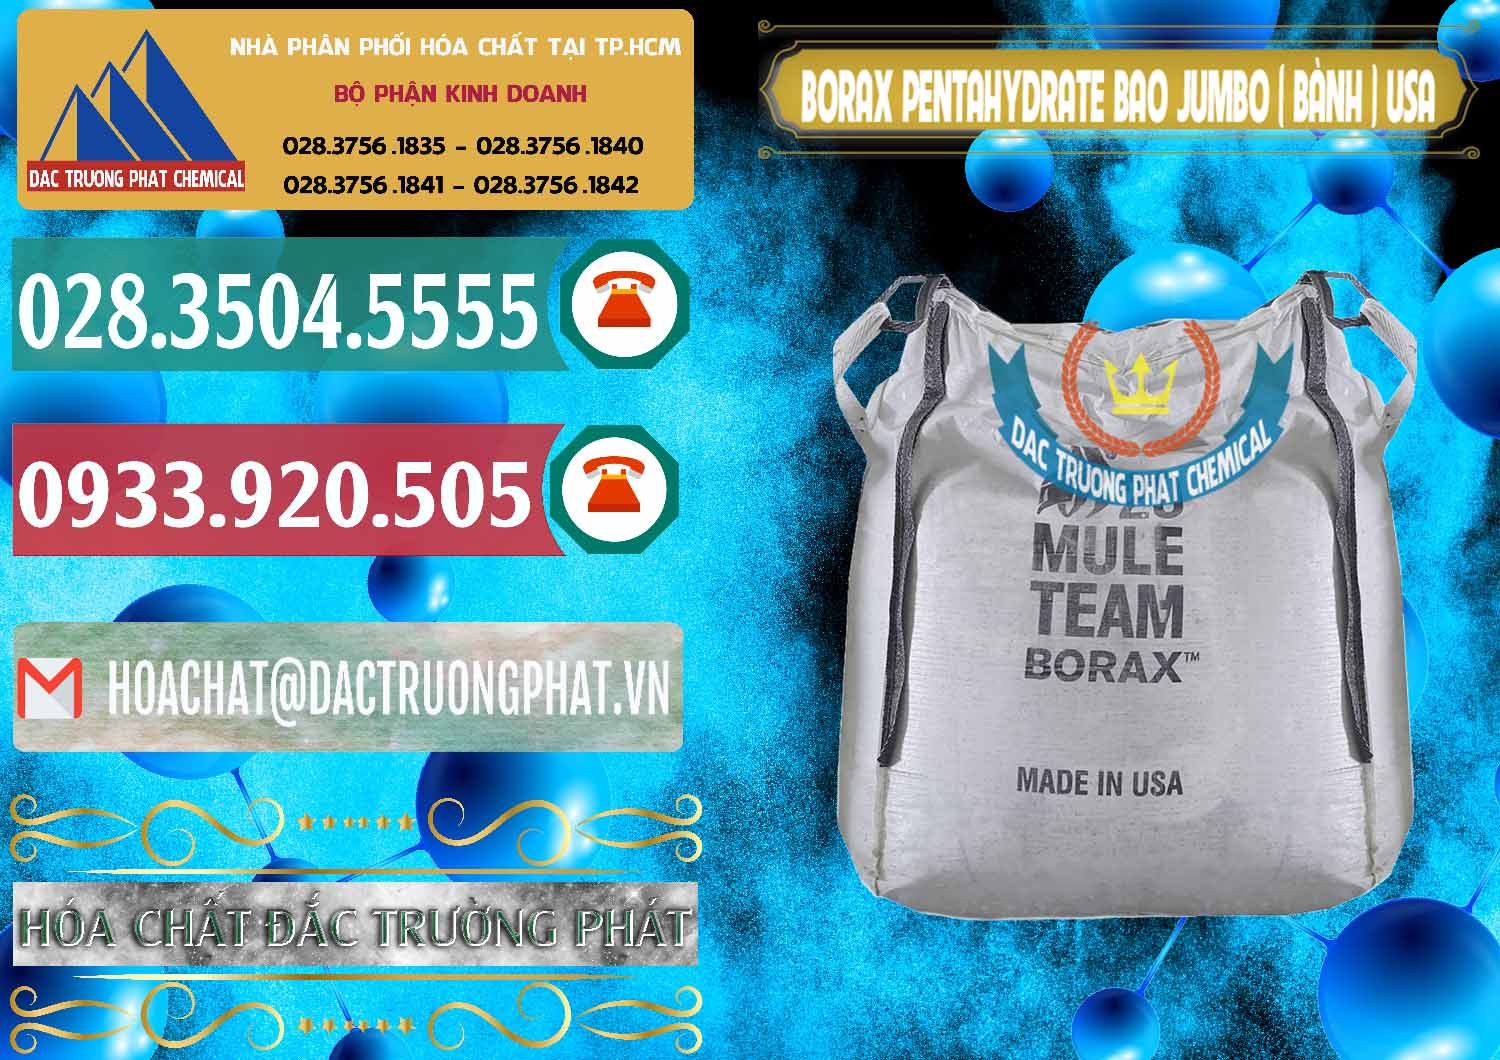 Công ty nhập khẩu - bán Borax Pentahydrate Bao Jumbo ( Bành ) Mule 20 Team Mỹ Usa - 0278 - Cty nhập khẩu và cung cấp hóa chất tại TP.HCM - muabanhoachat.vn